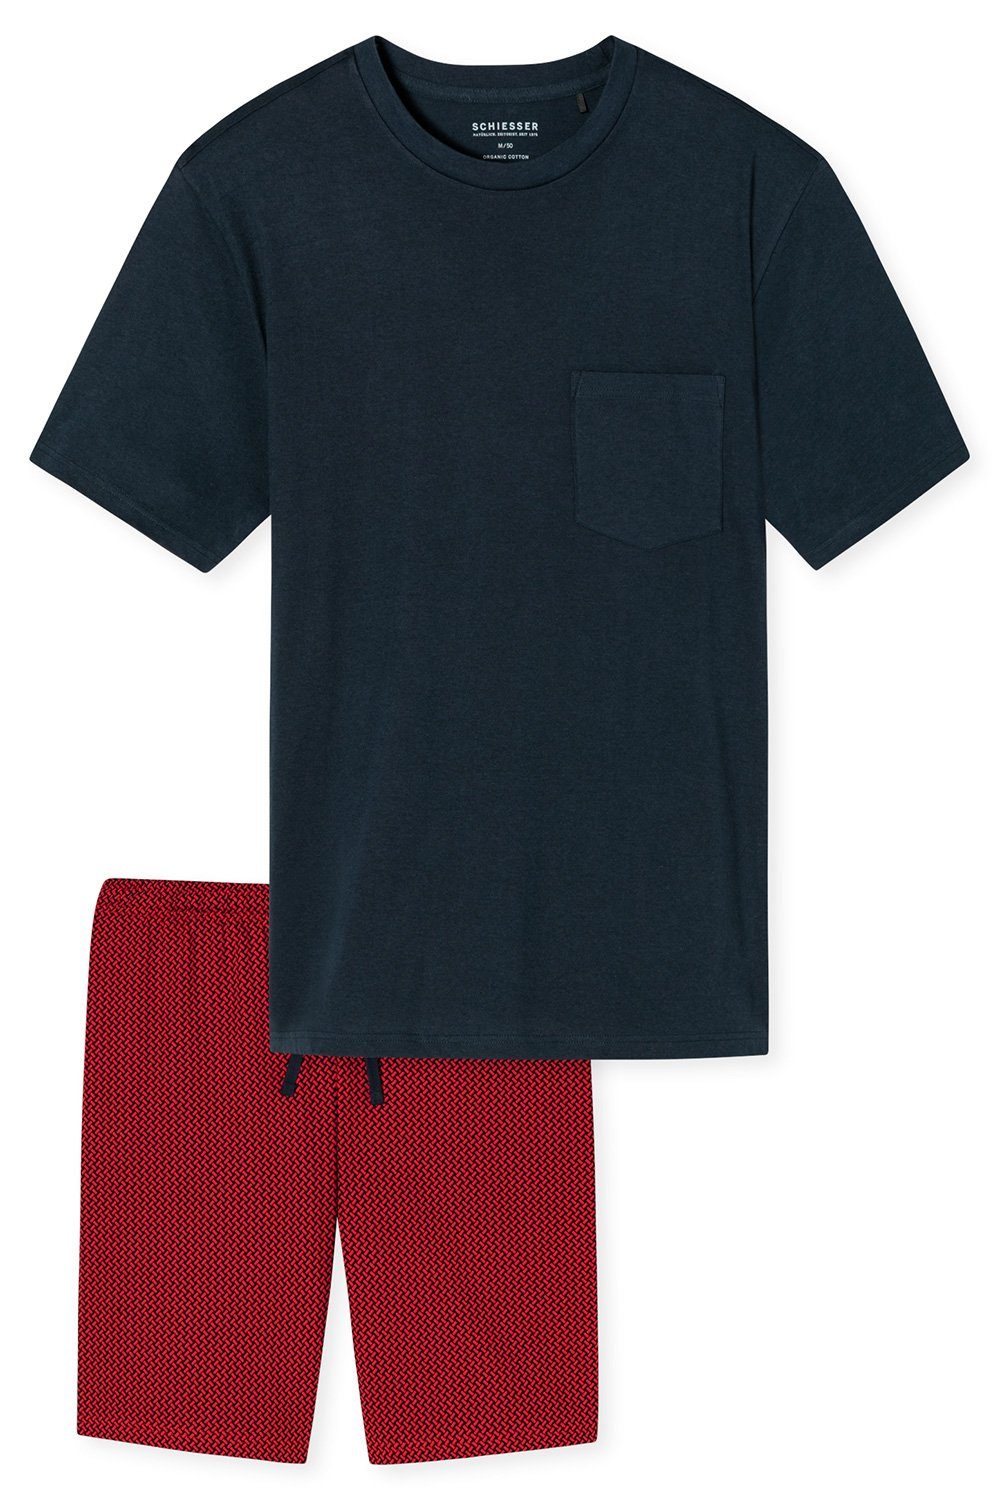 Schiesser Shorty Herren Kurz-Pyjama (803) Set Schlafanzug aus reiner tlg) Baumwolle (2 dunkelblau